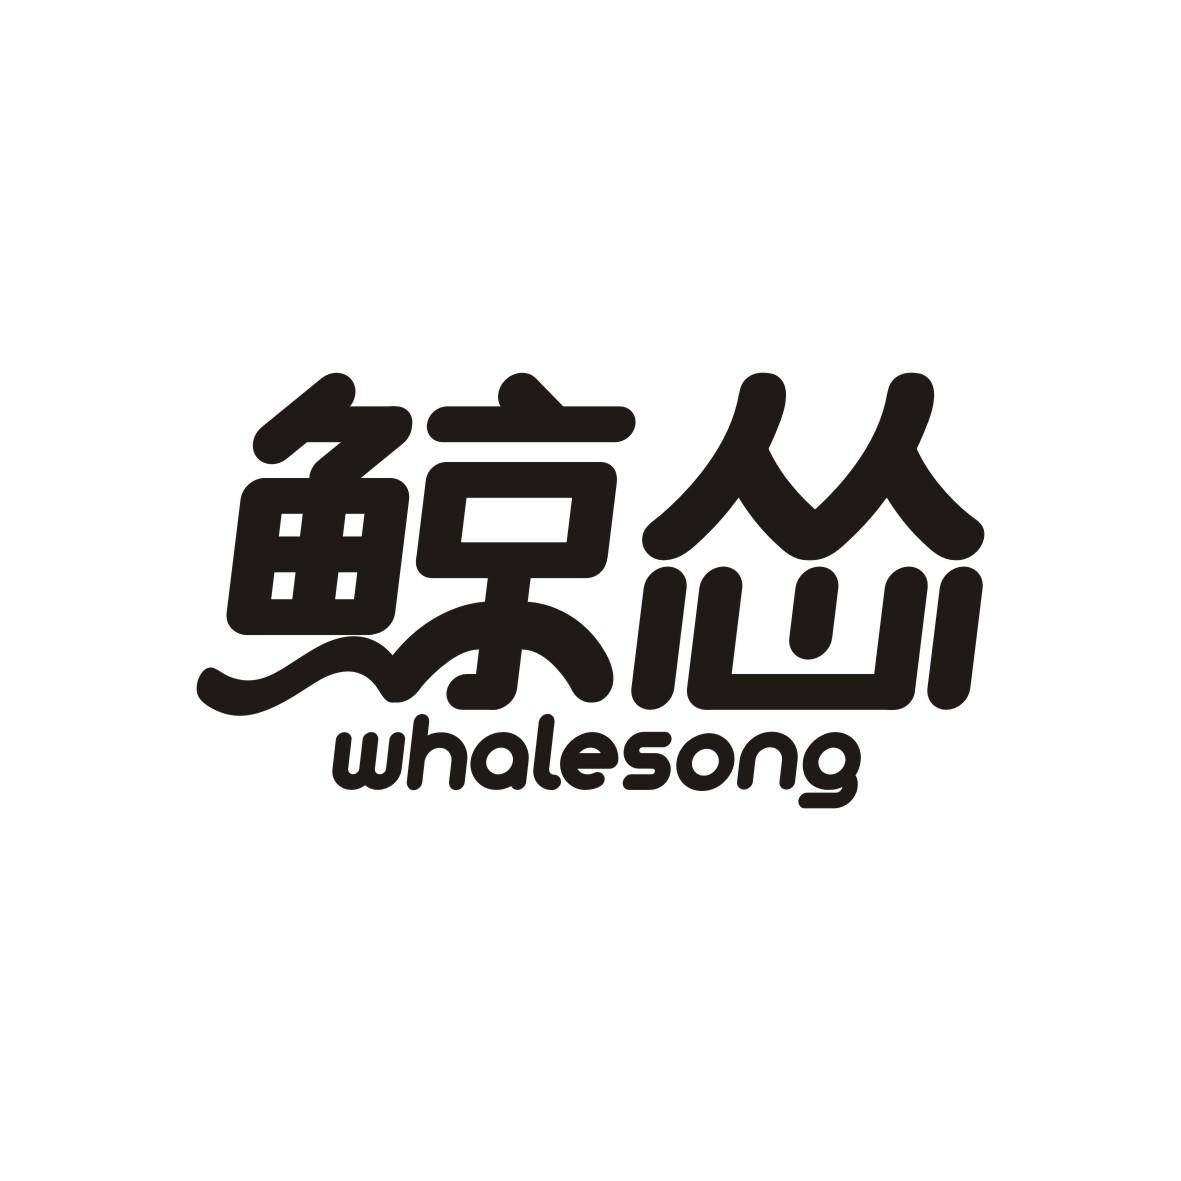 鲸怂
whalesong